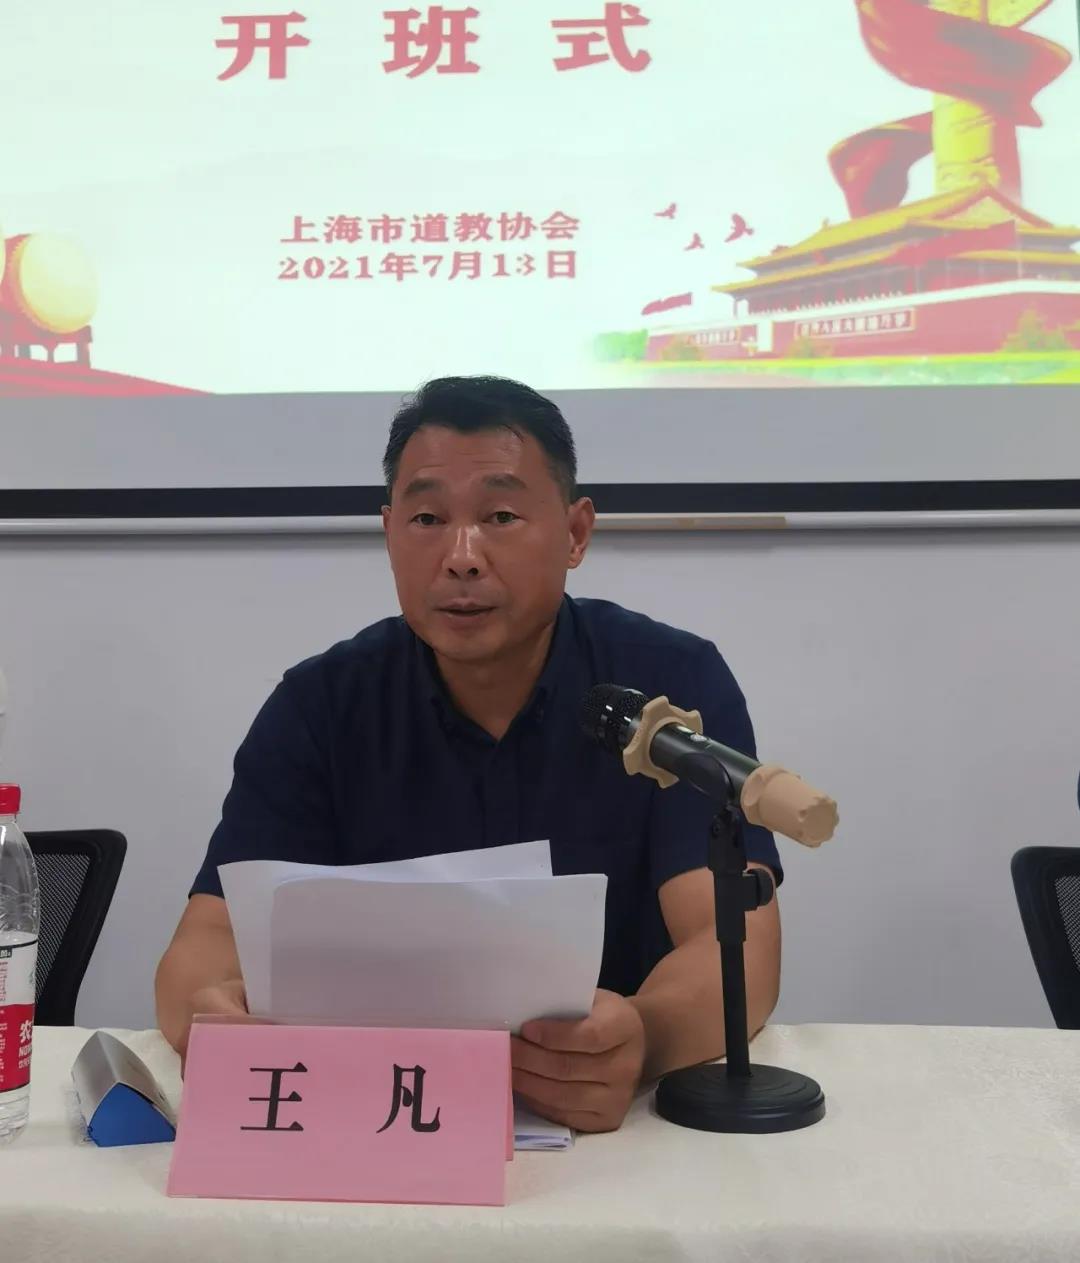 上海市道协举办2021年度第二批次上海道教人才库培训班暨“四史”“三爱”主题活动